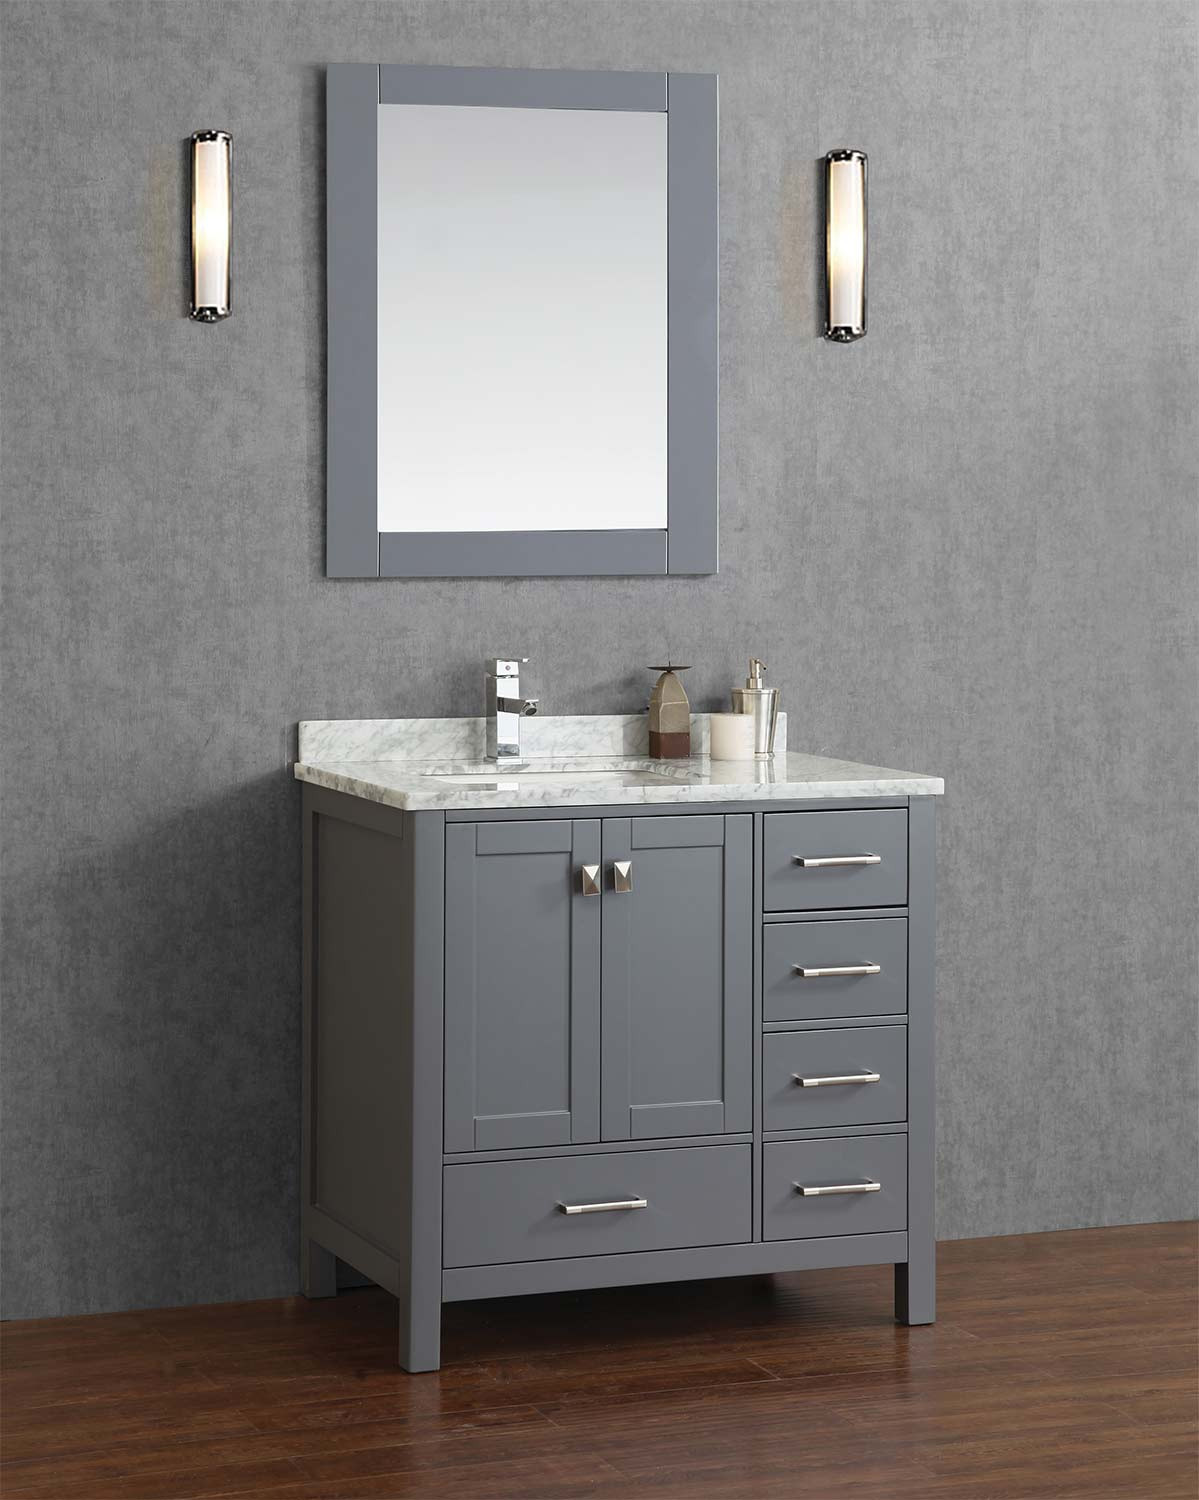 Real Wood Bathroom Vanities
 Buy Vincent 36 Inch Solid Wood Single Bathroom Vanity in